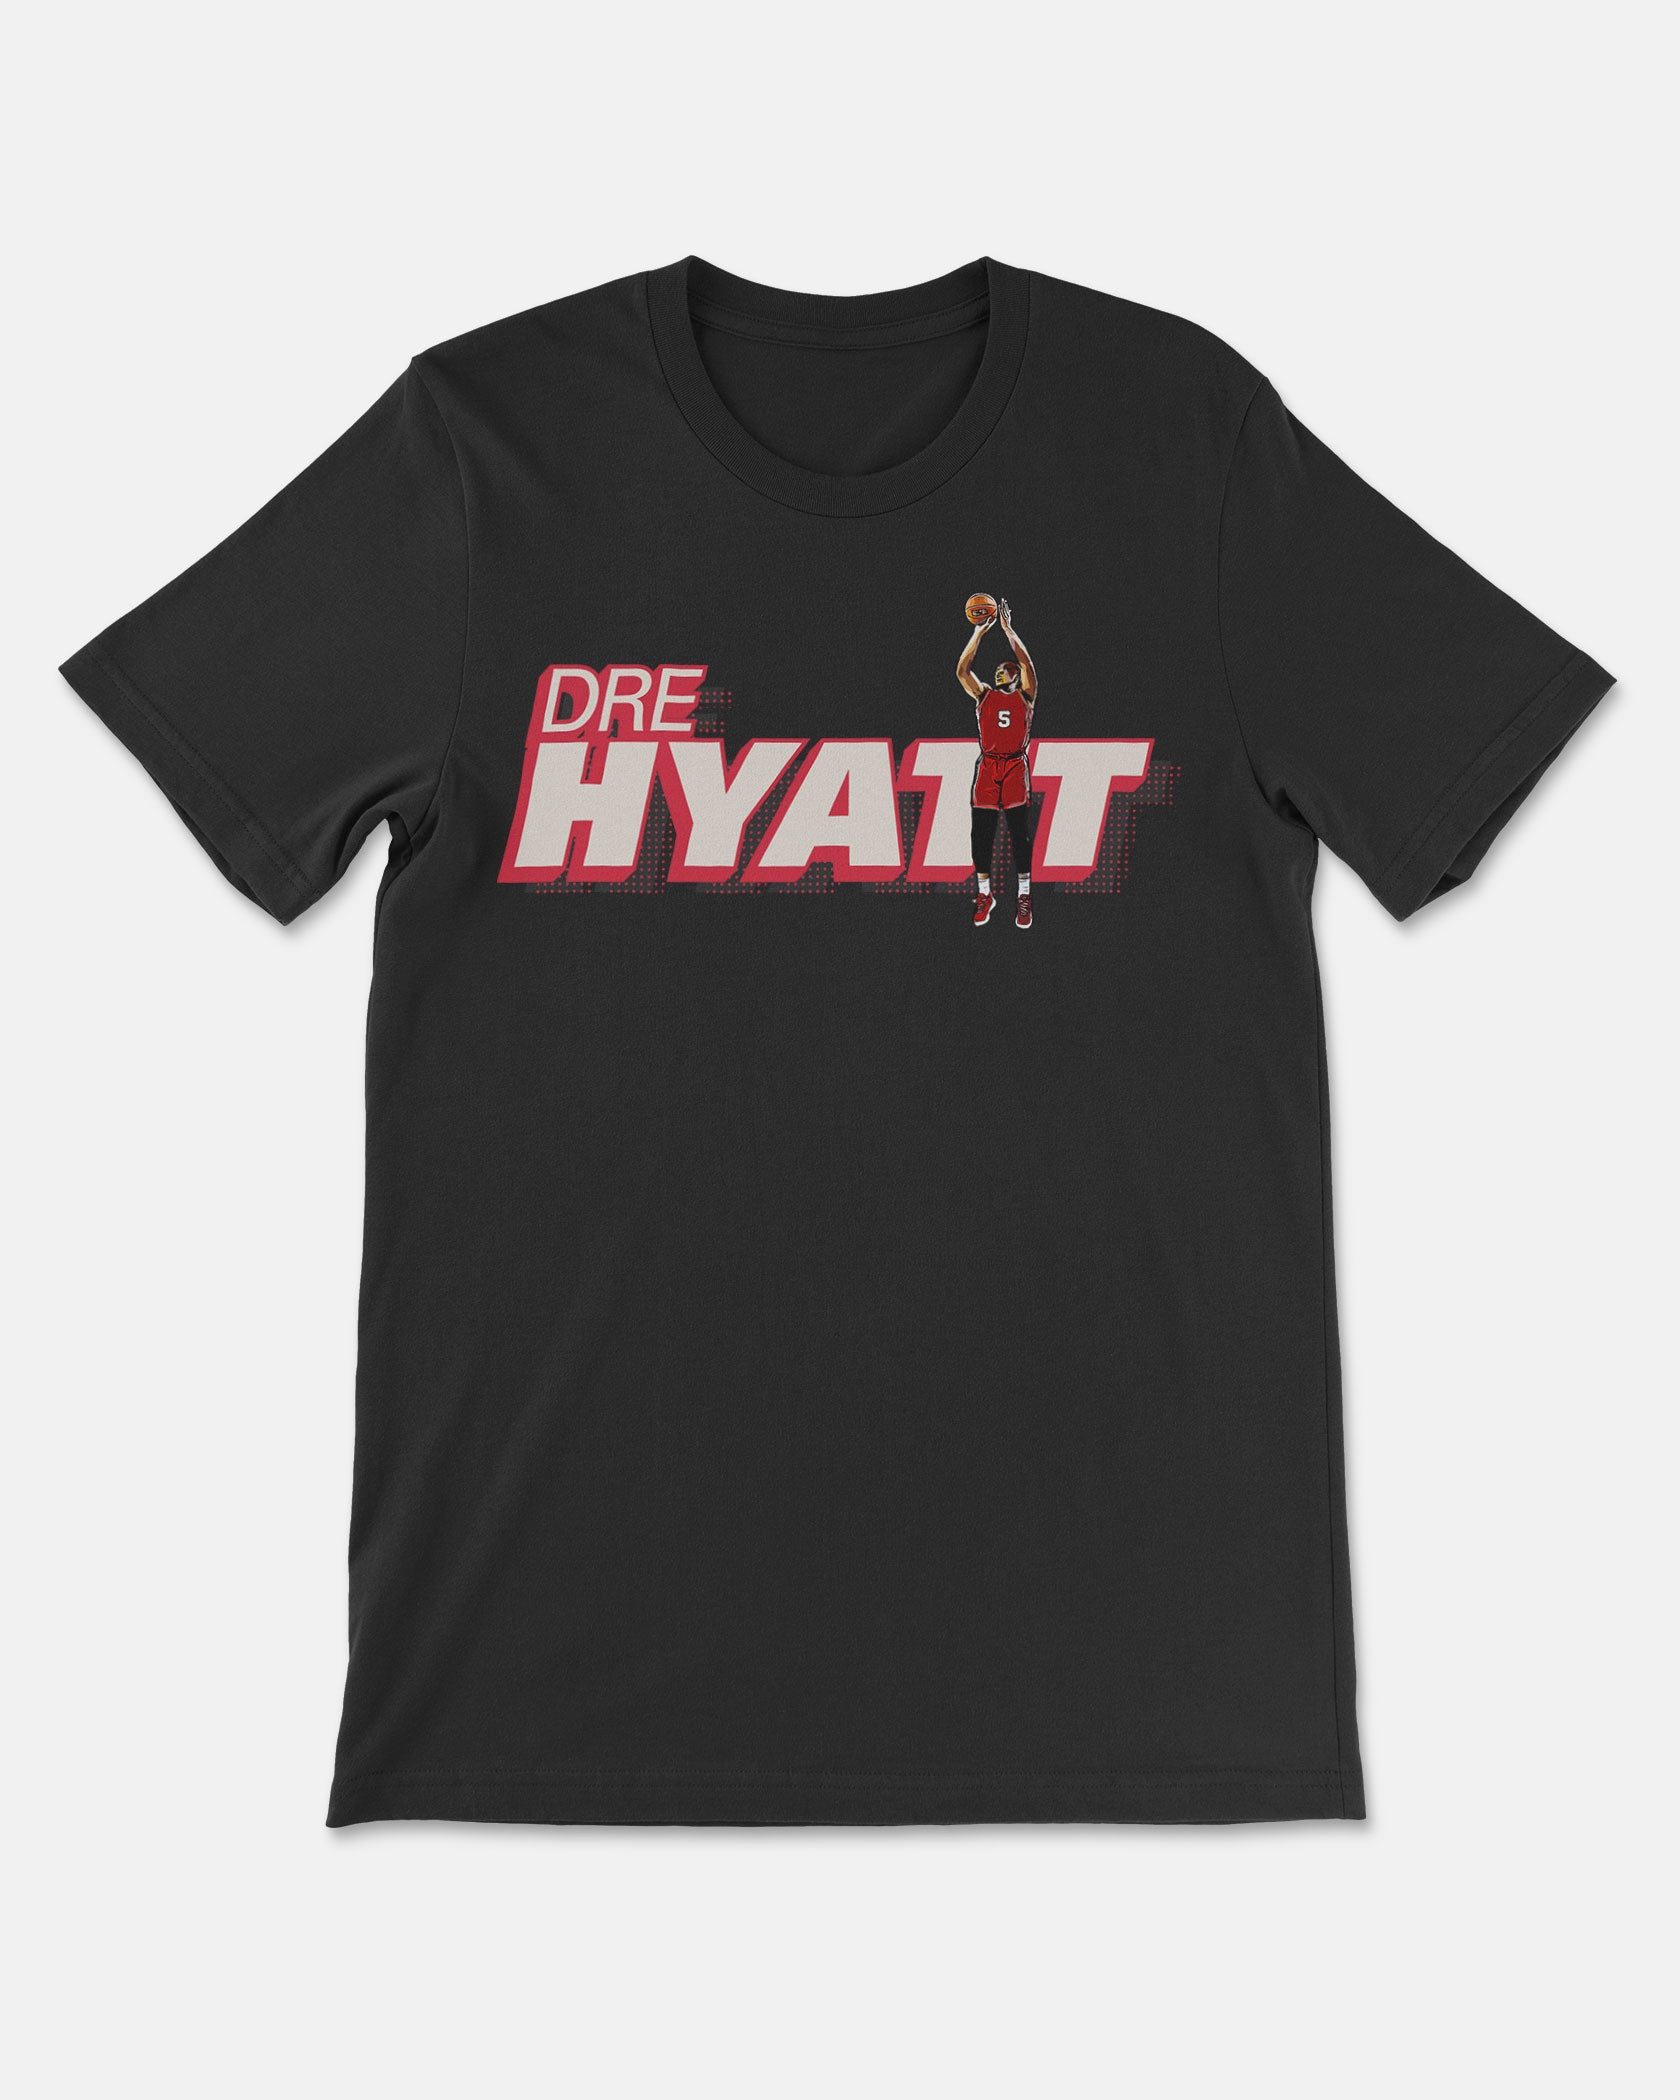 Aundre Hyatt Shirt 001